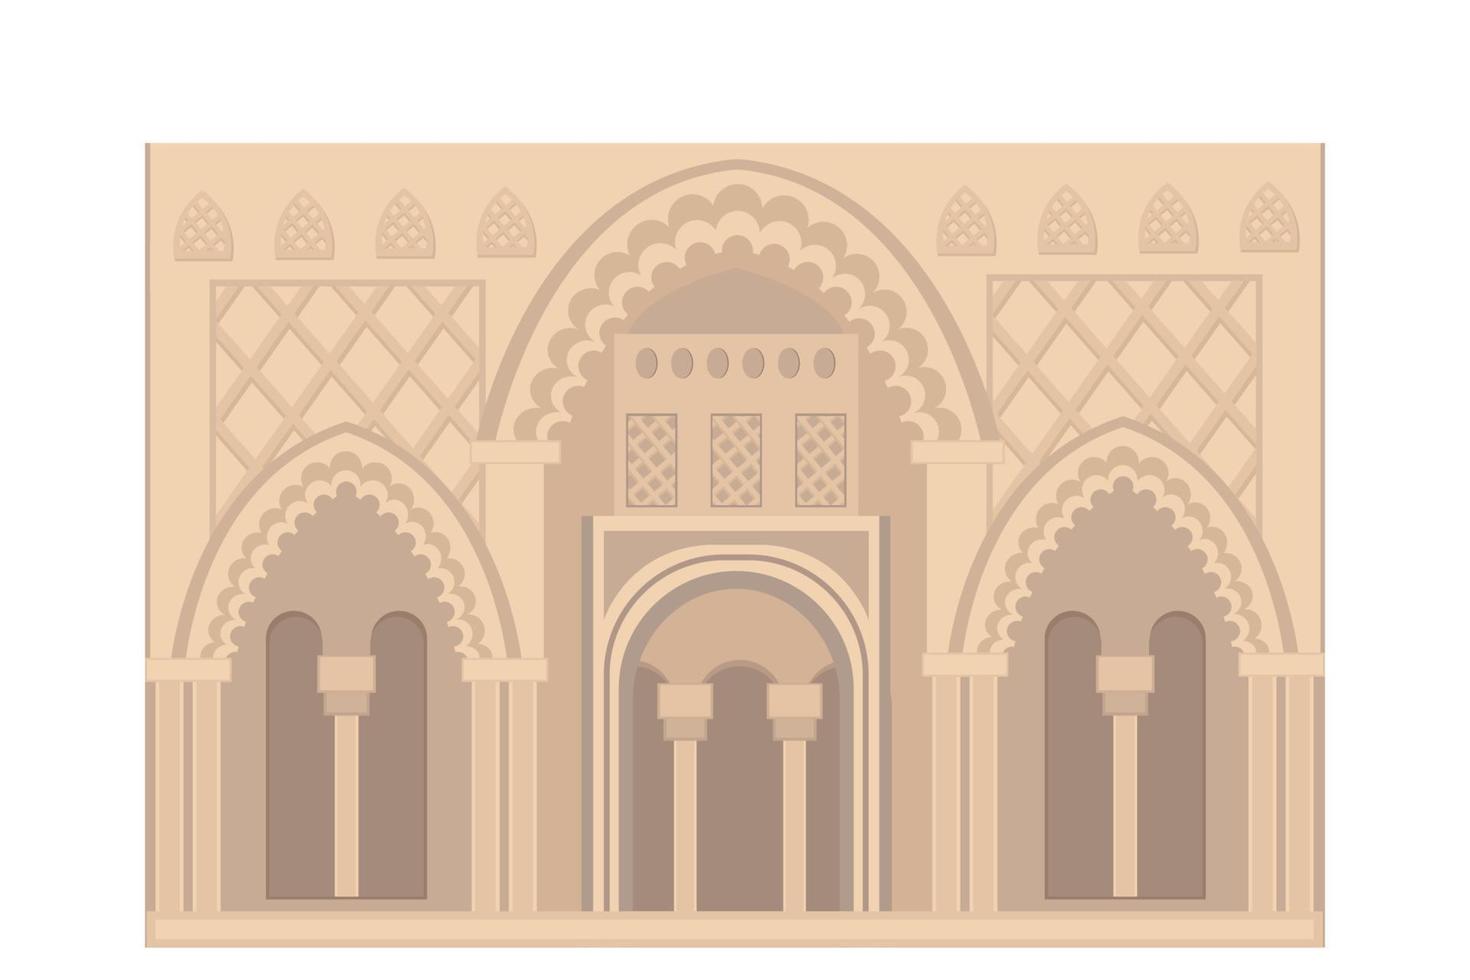 entrada do palácio indiano, ilustração plana nas cores bege e marrom, isolada no fundo branco vetor